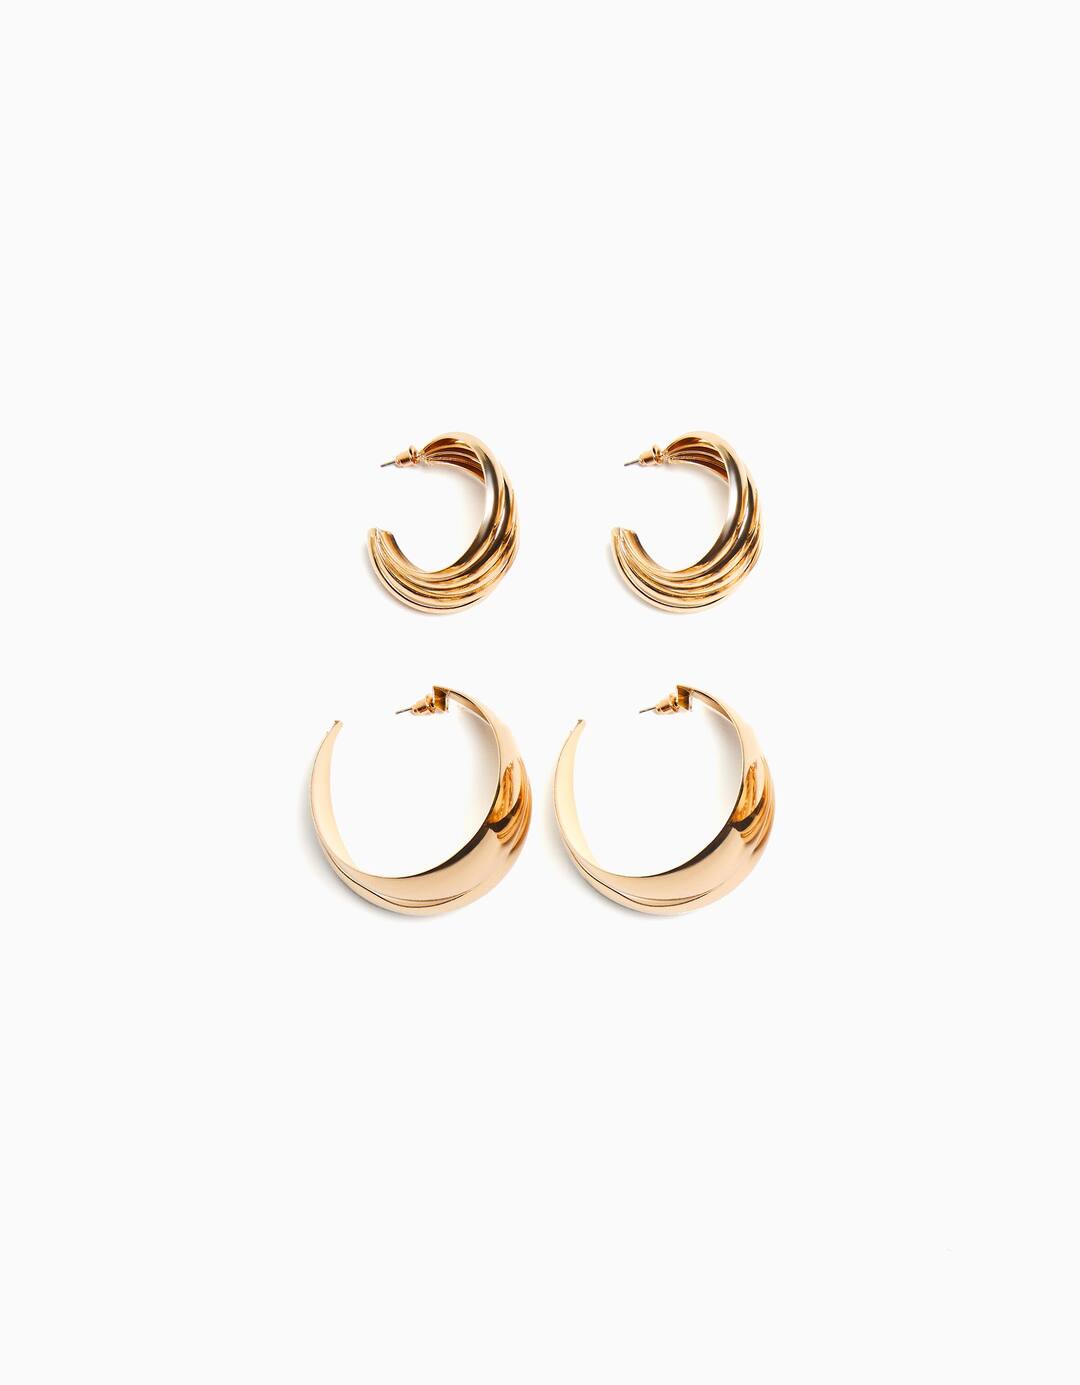 Set of 2 pairs of thick hoop earrings